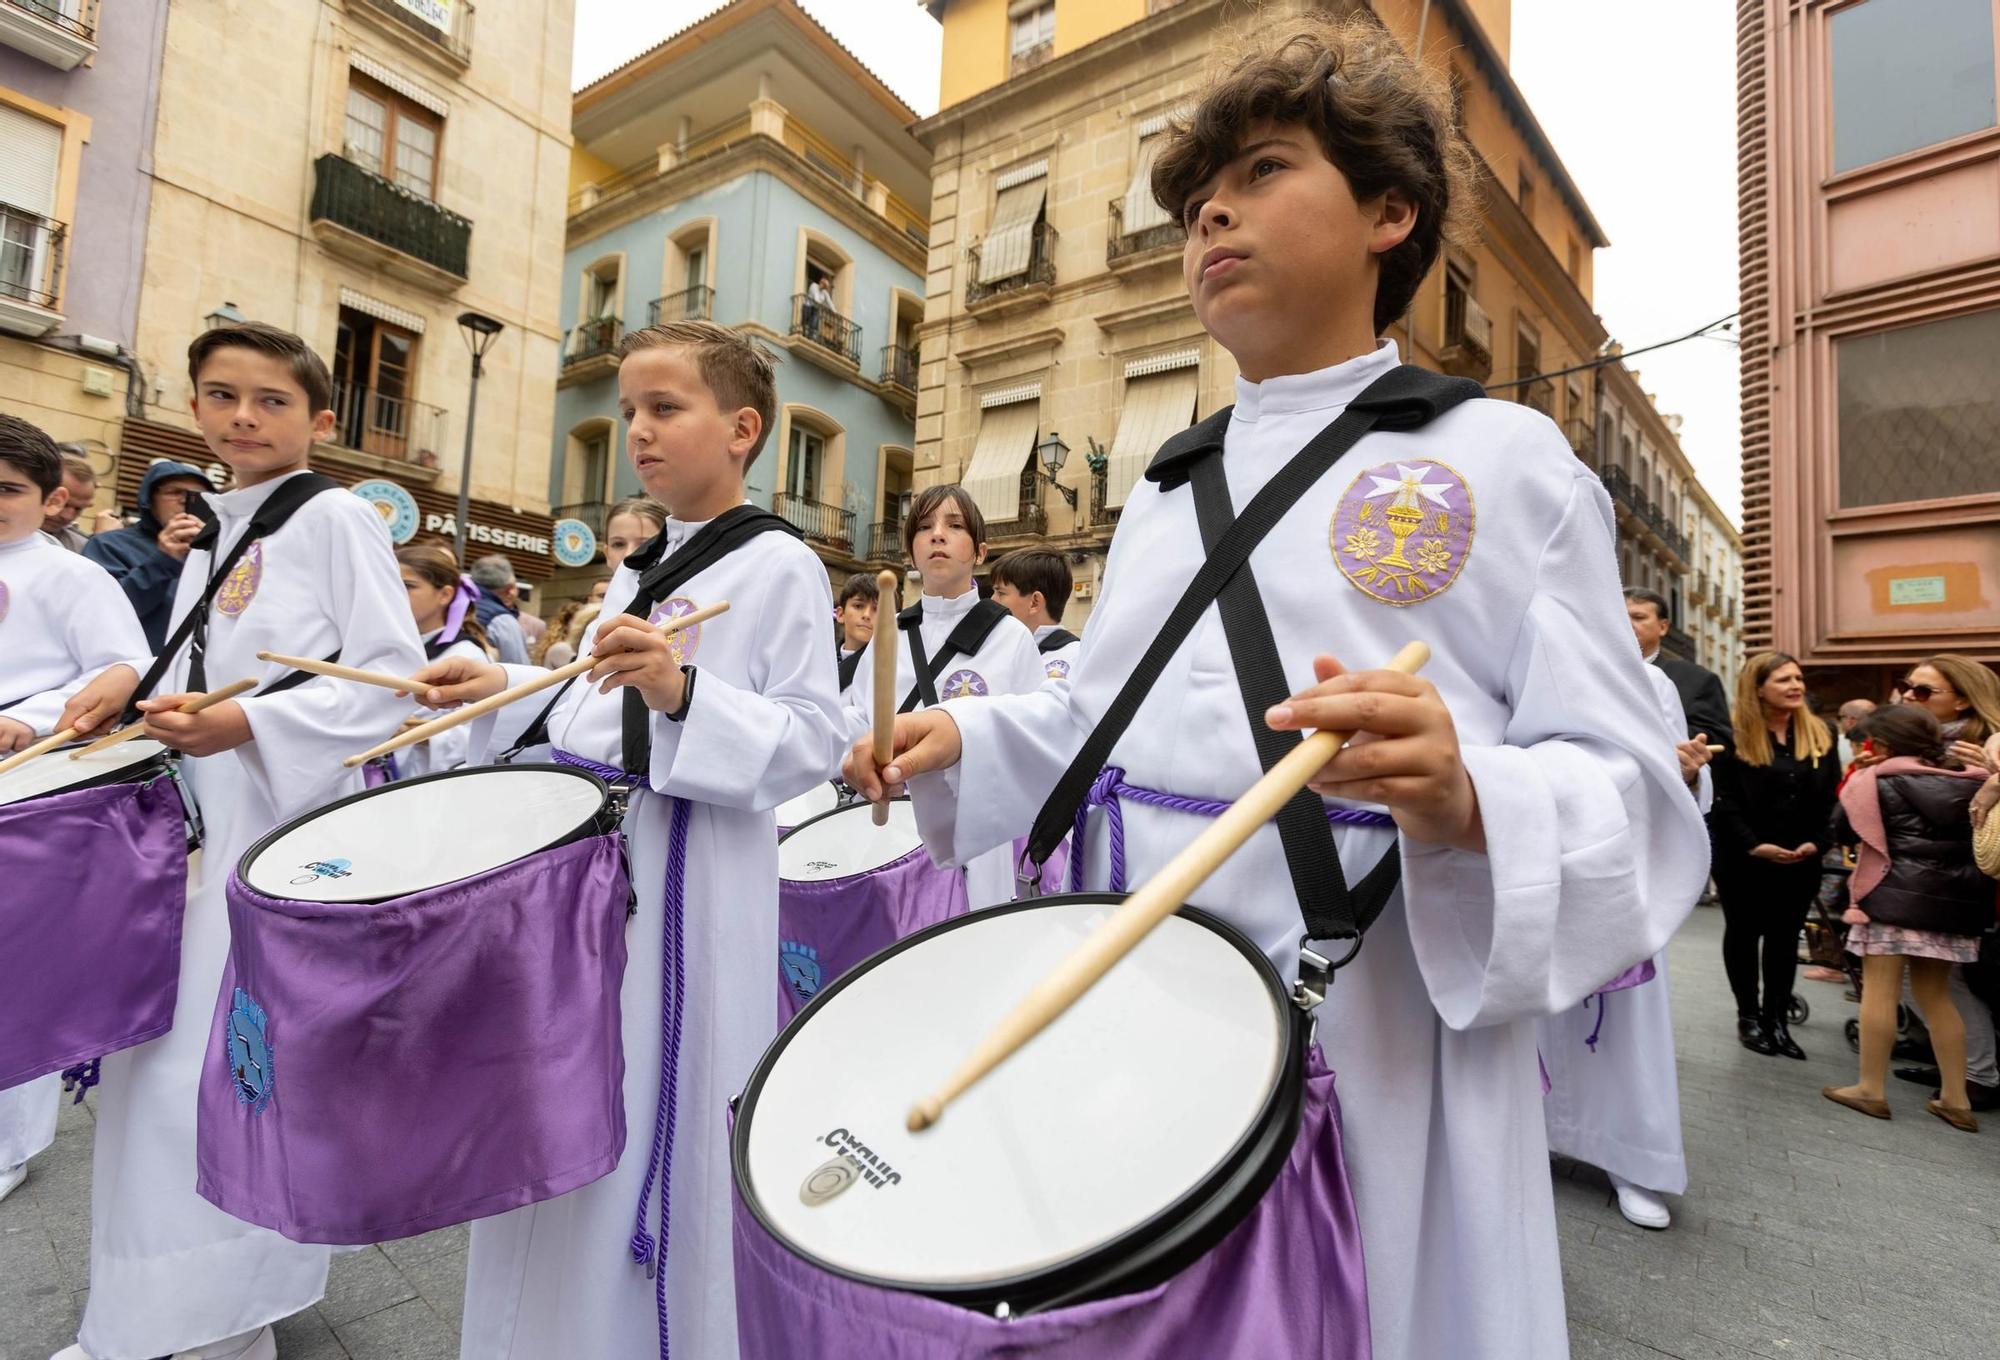 Miles de personas abarrotan el centro de la ciudad de Alicante para celebrar el Domingo de Ramos